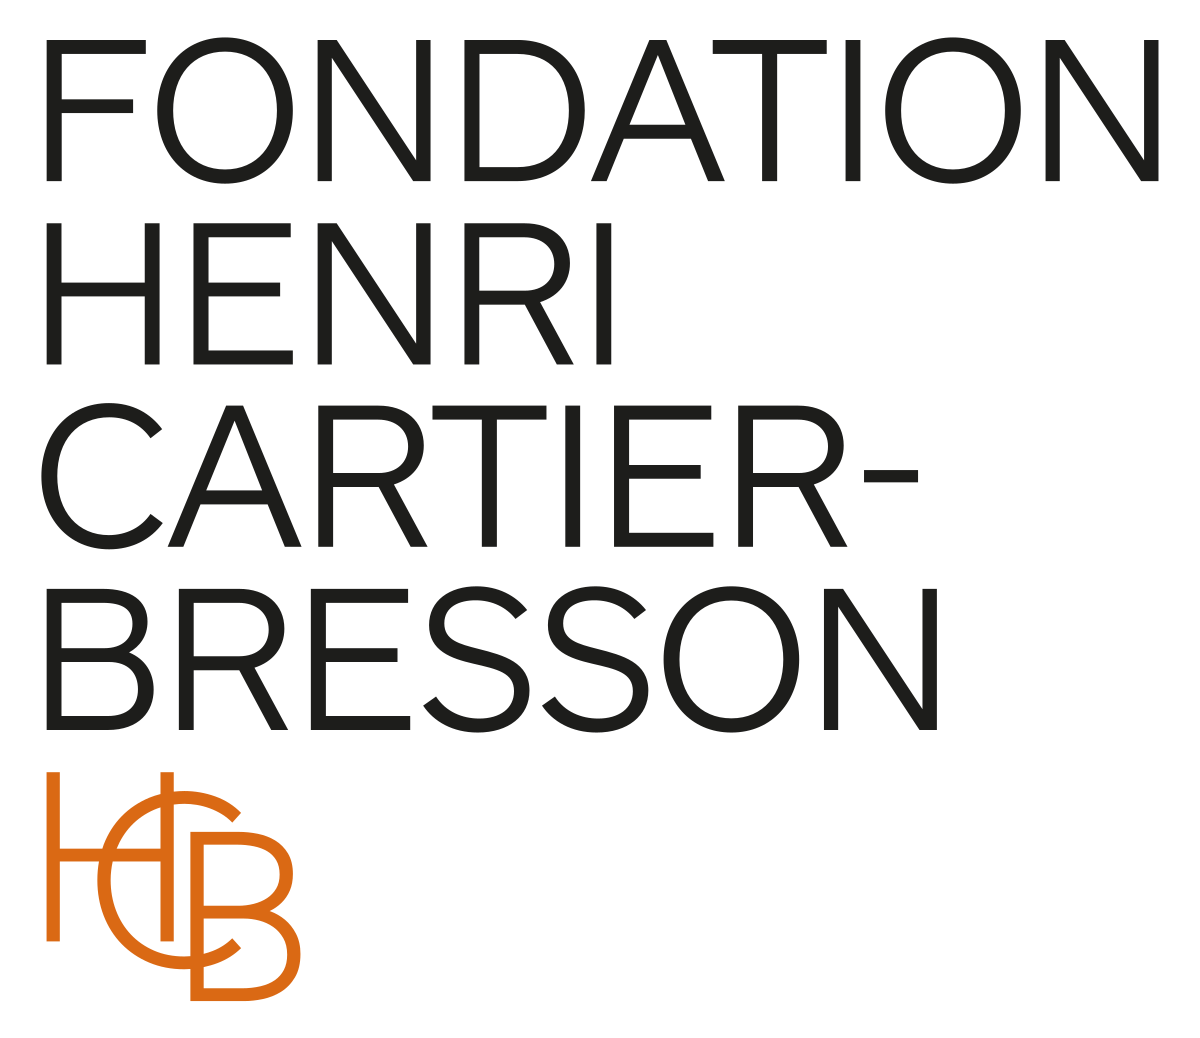 fondation cartier wikipedia